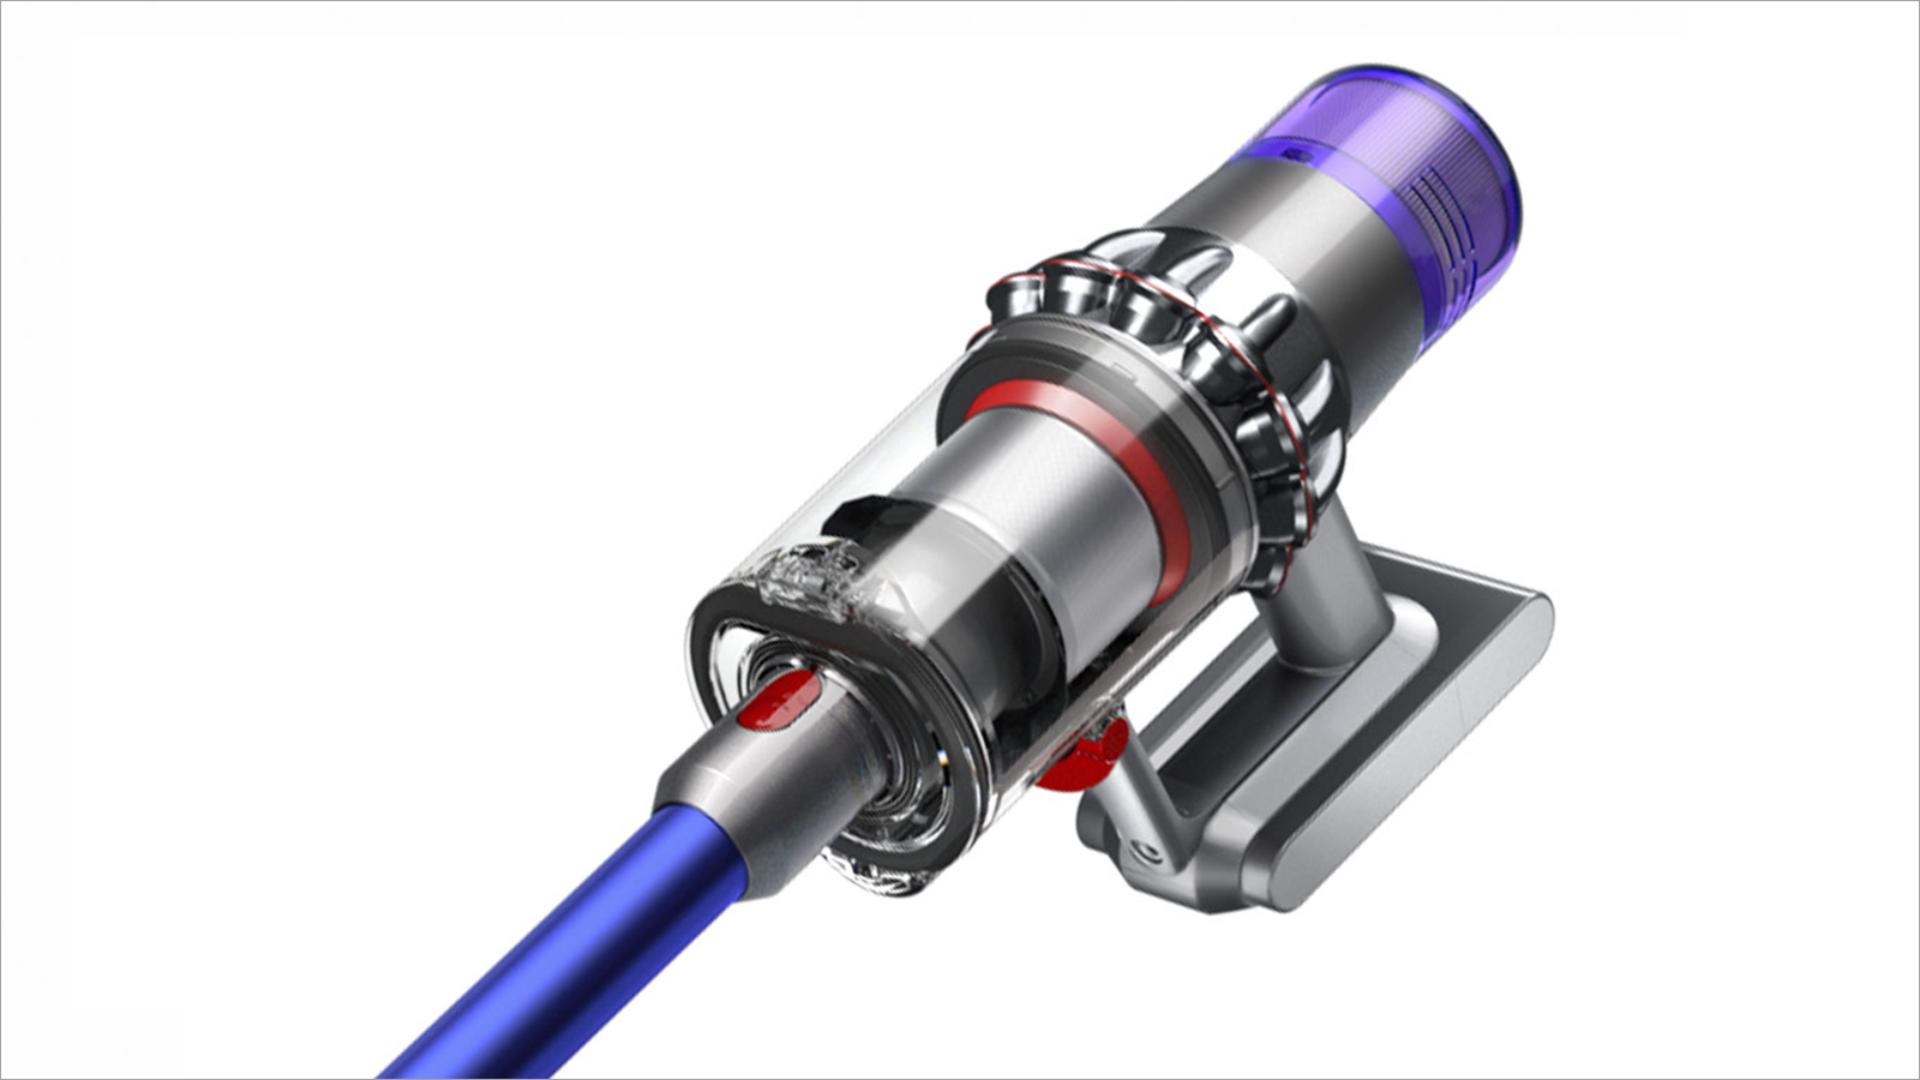 Dyson V11™ cord-free vacuum	